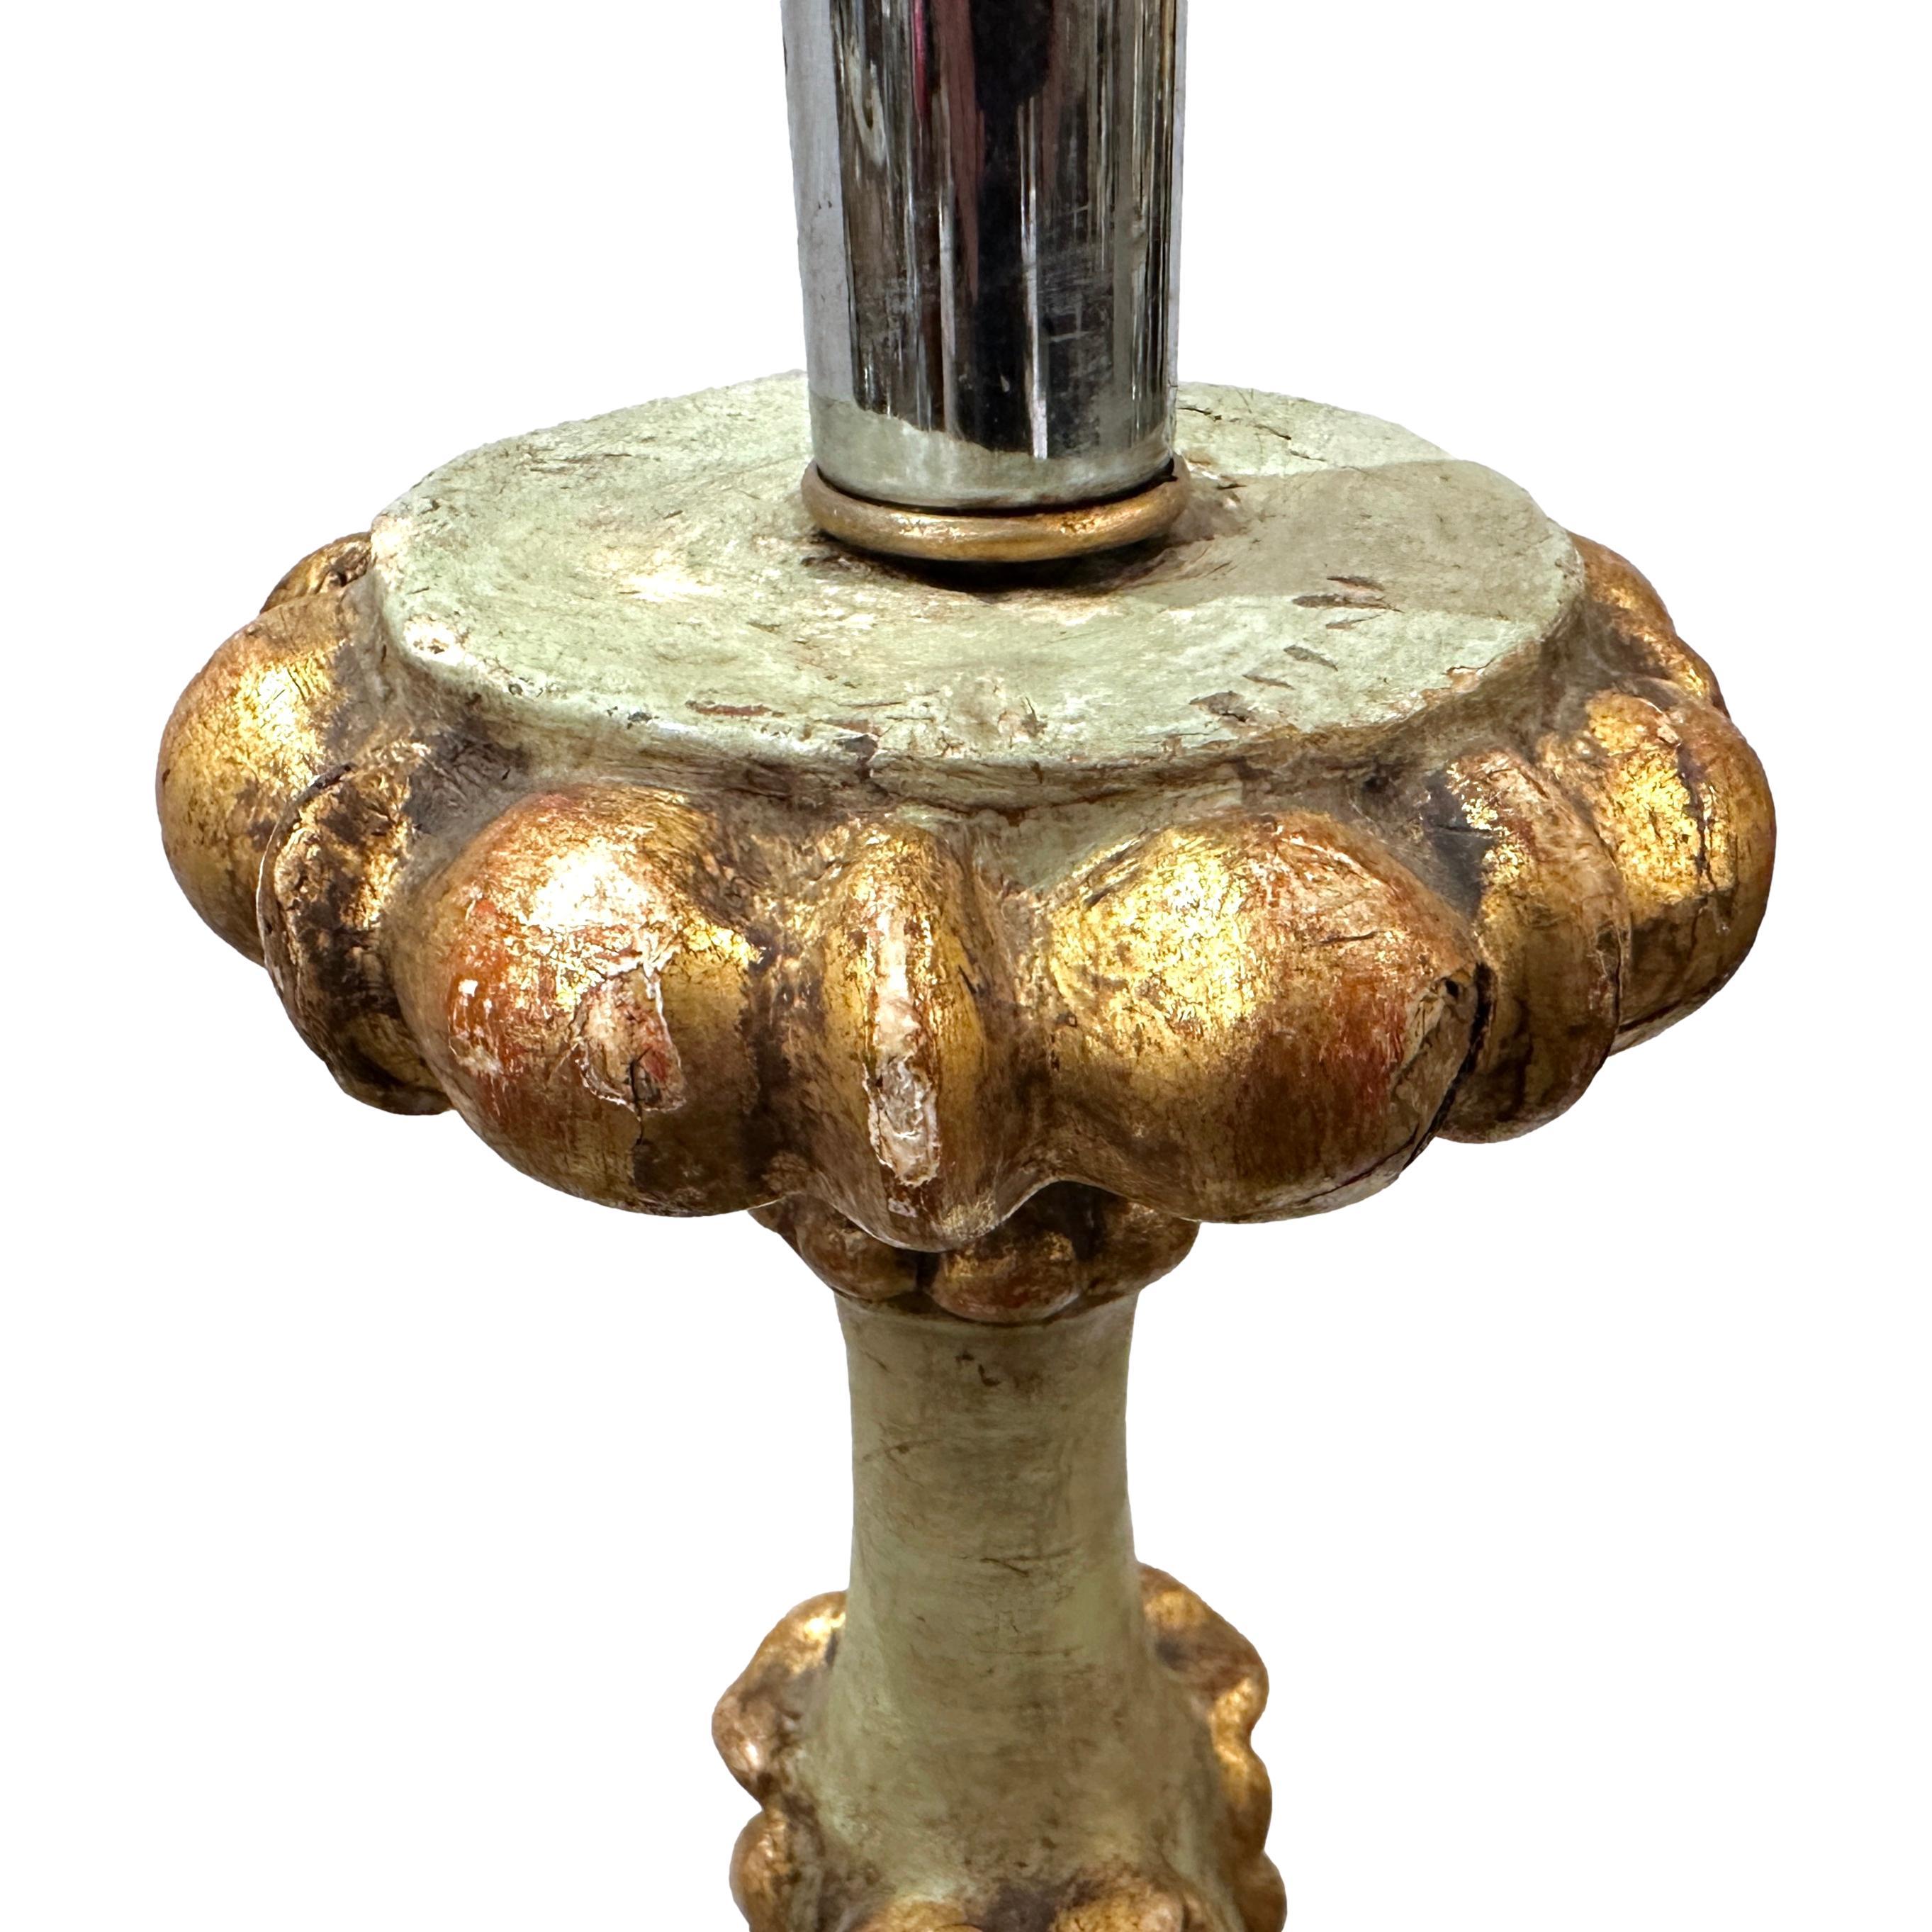 Paire de chandeliers italiens en bois sculpté et doré des années 1920, montés comme lampes.

Mesures :
Hauteur du corps : 24
Diamètre au plus large (base) : 8